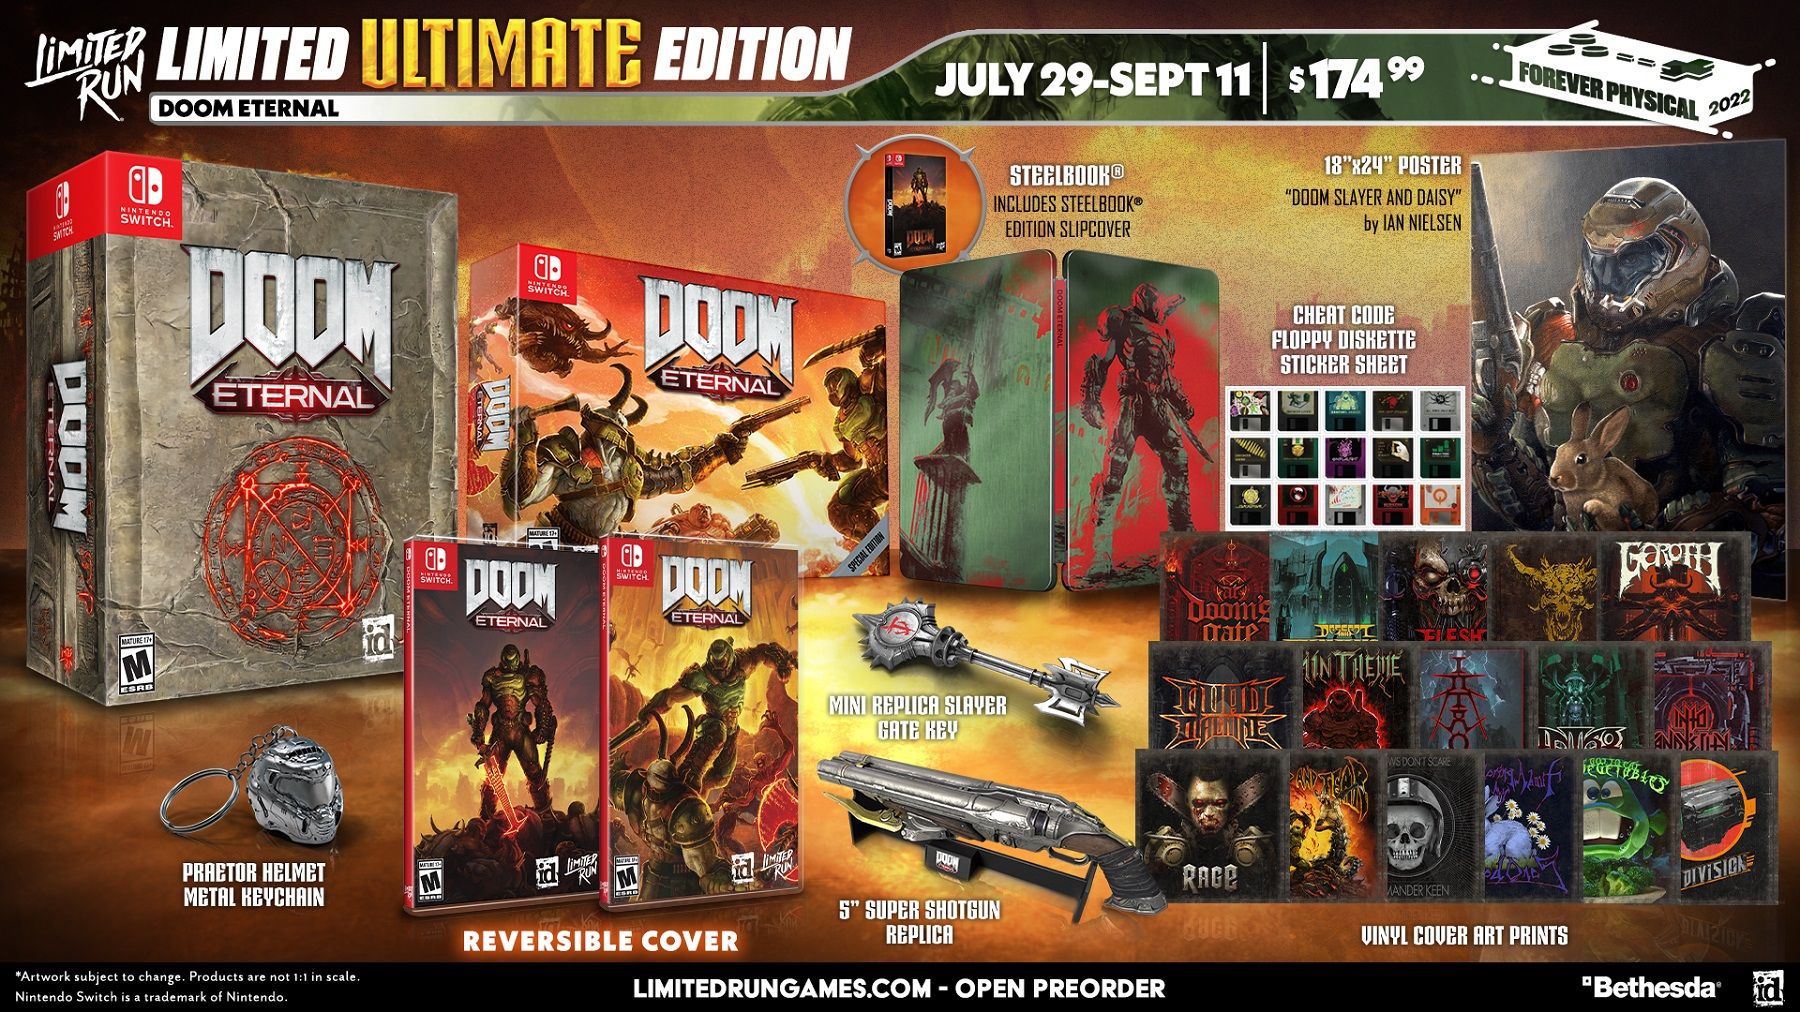 Изображение, показывающее все бонусные материалы, поставляемые с Doom Eternal Ultimate Edition для Switch.